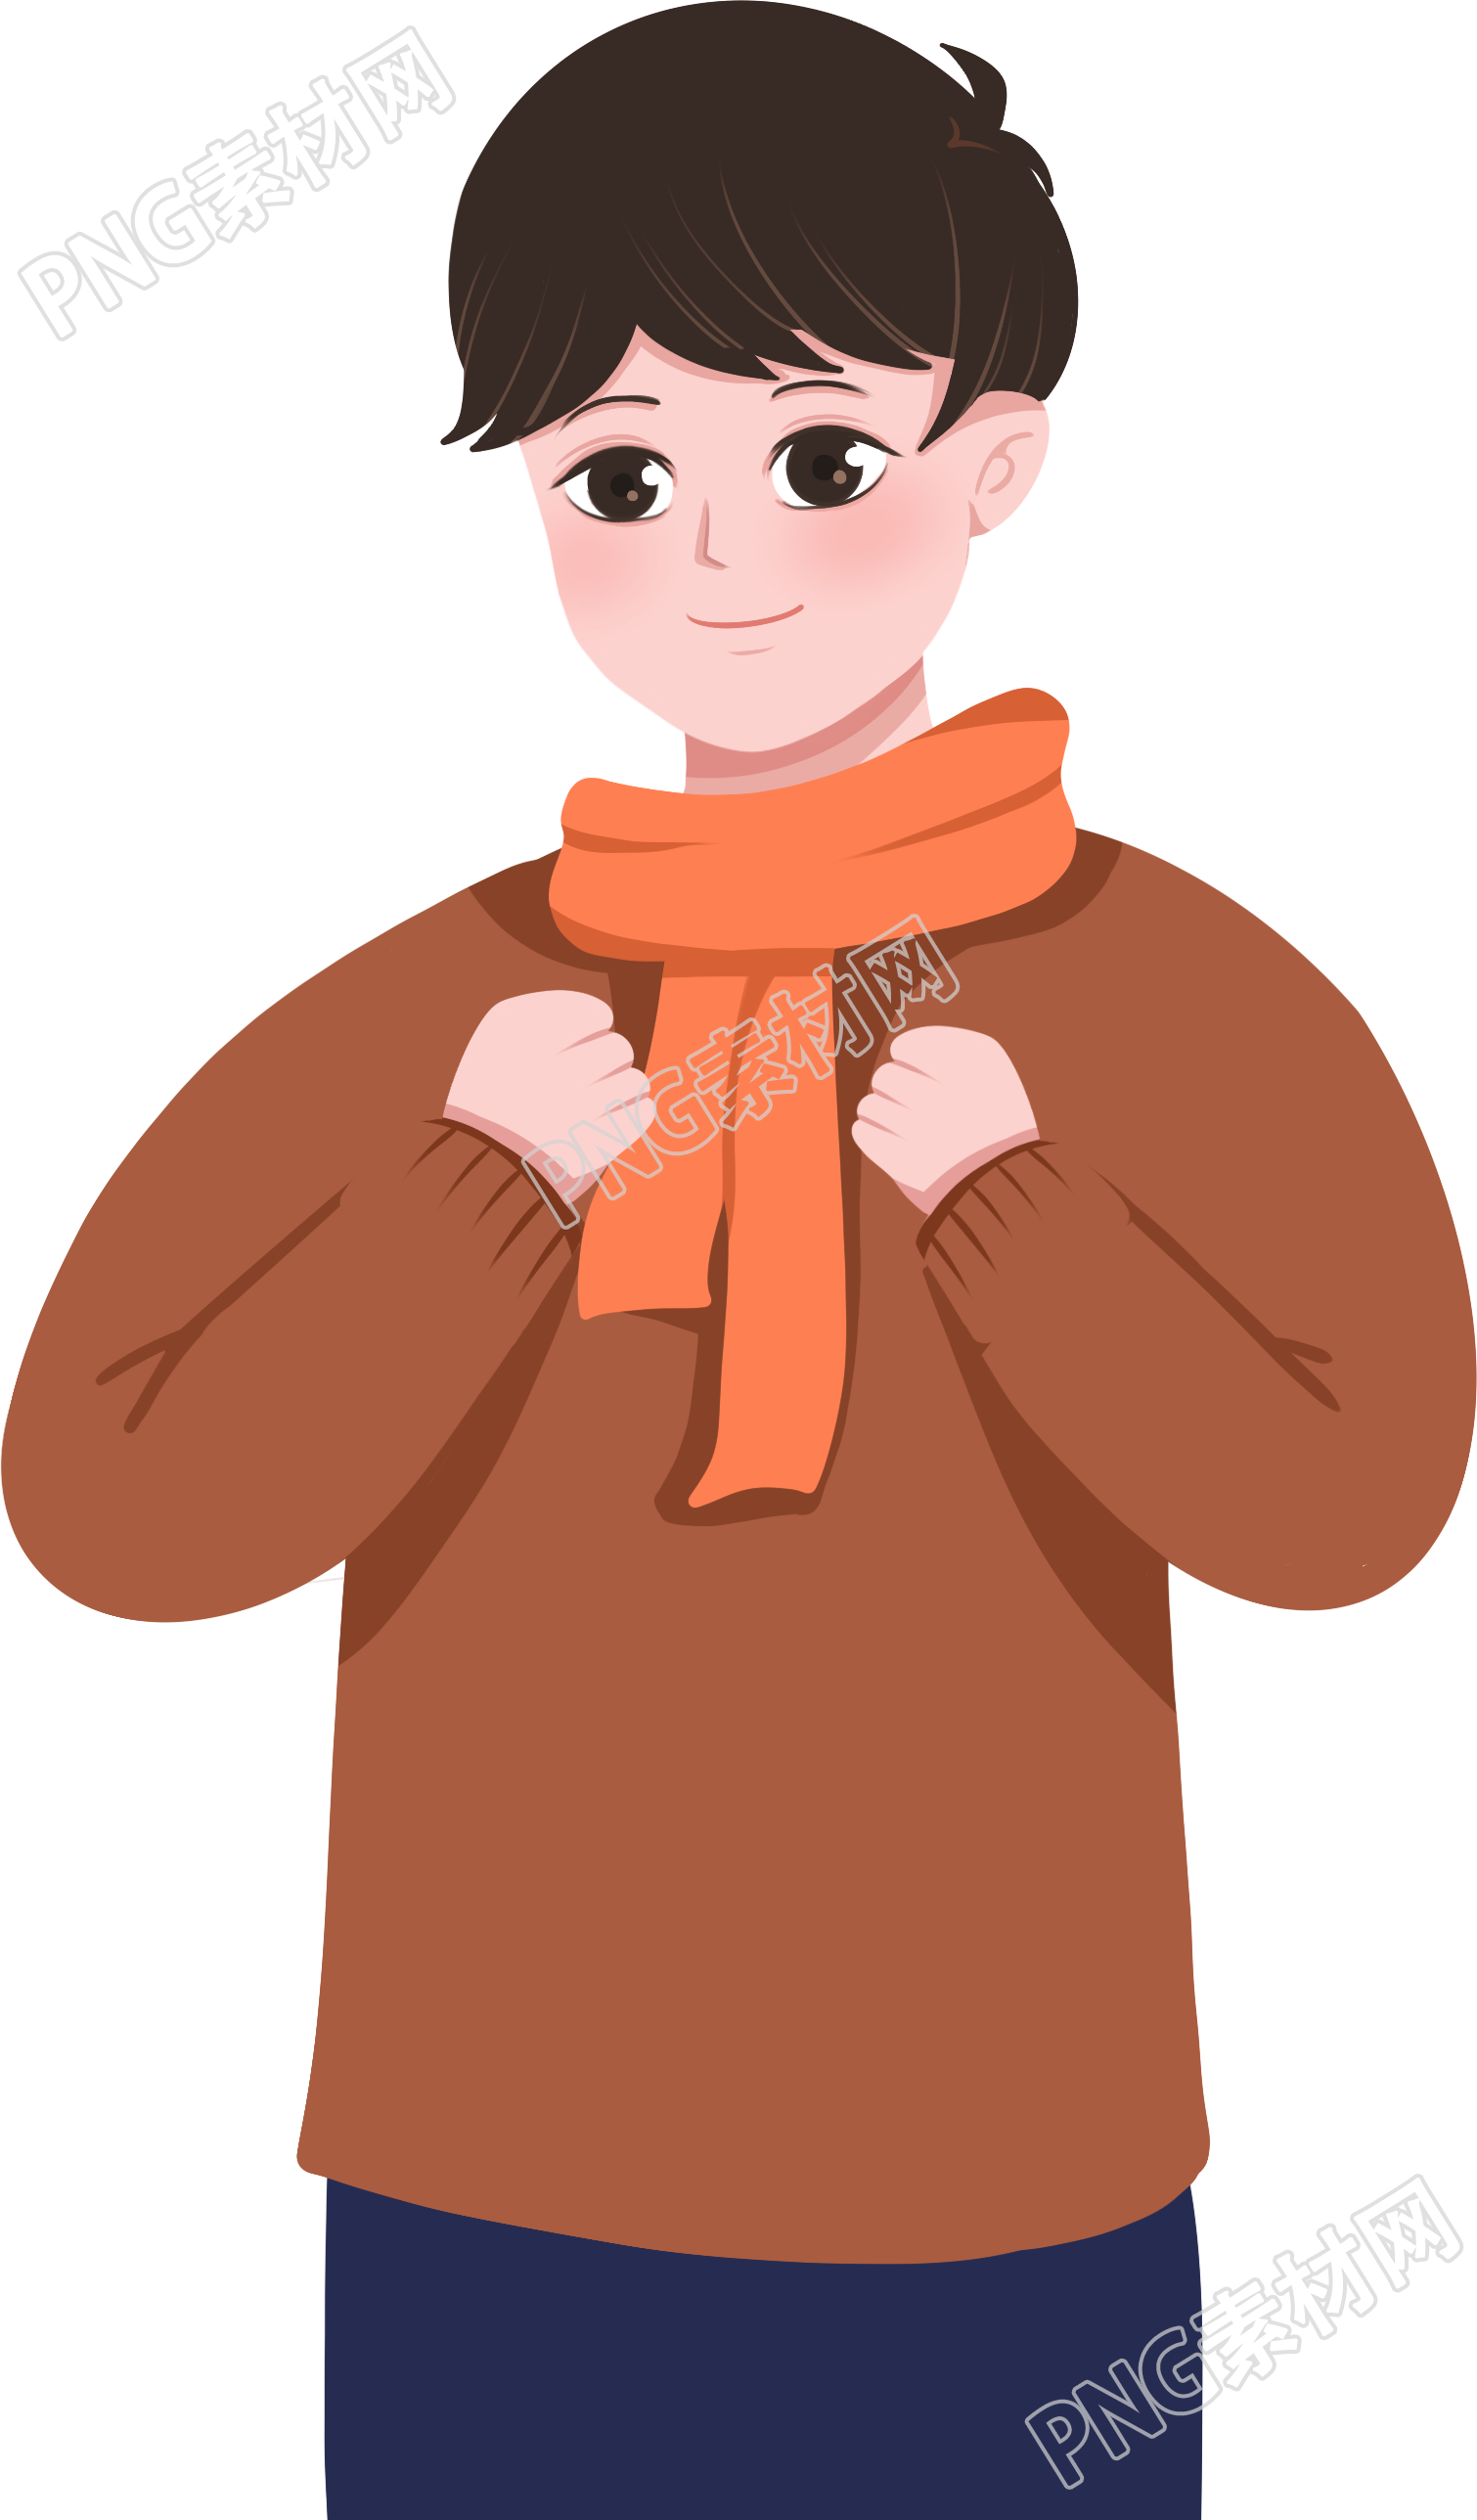 冬季戴围巾的男孩素材